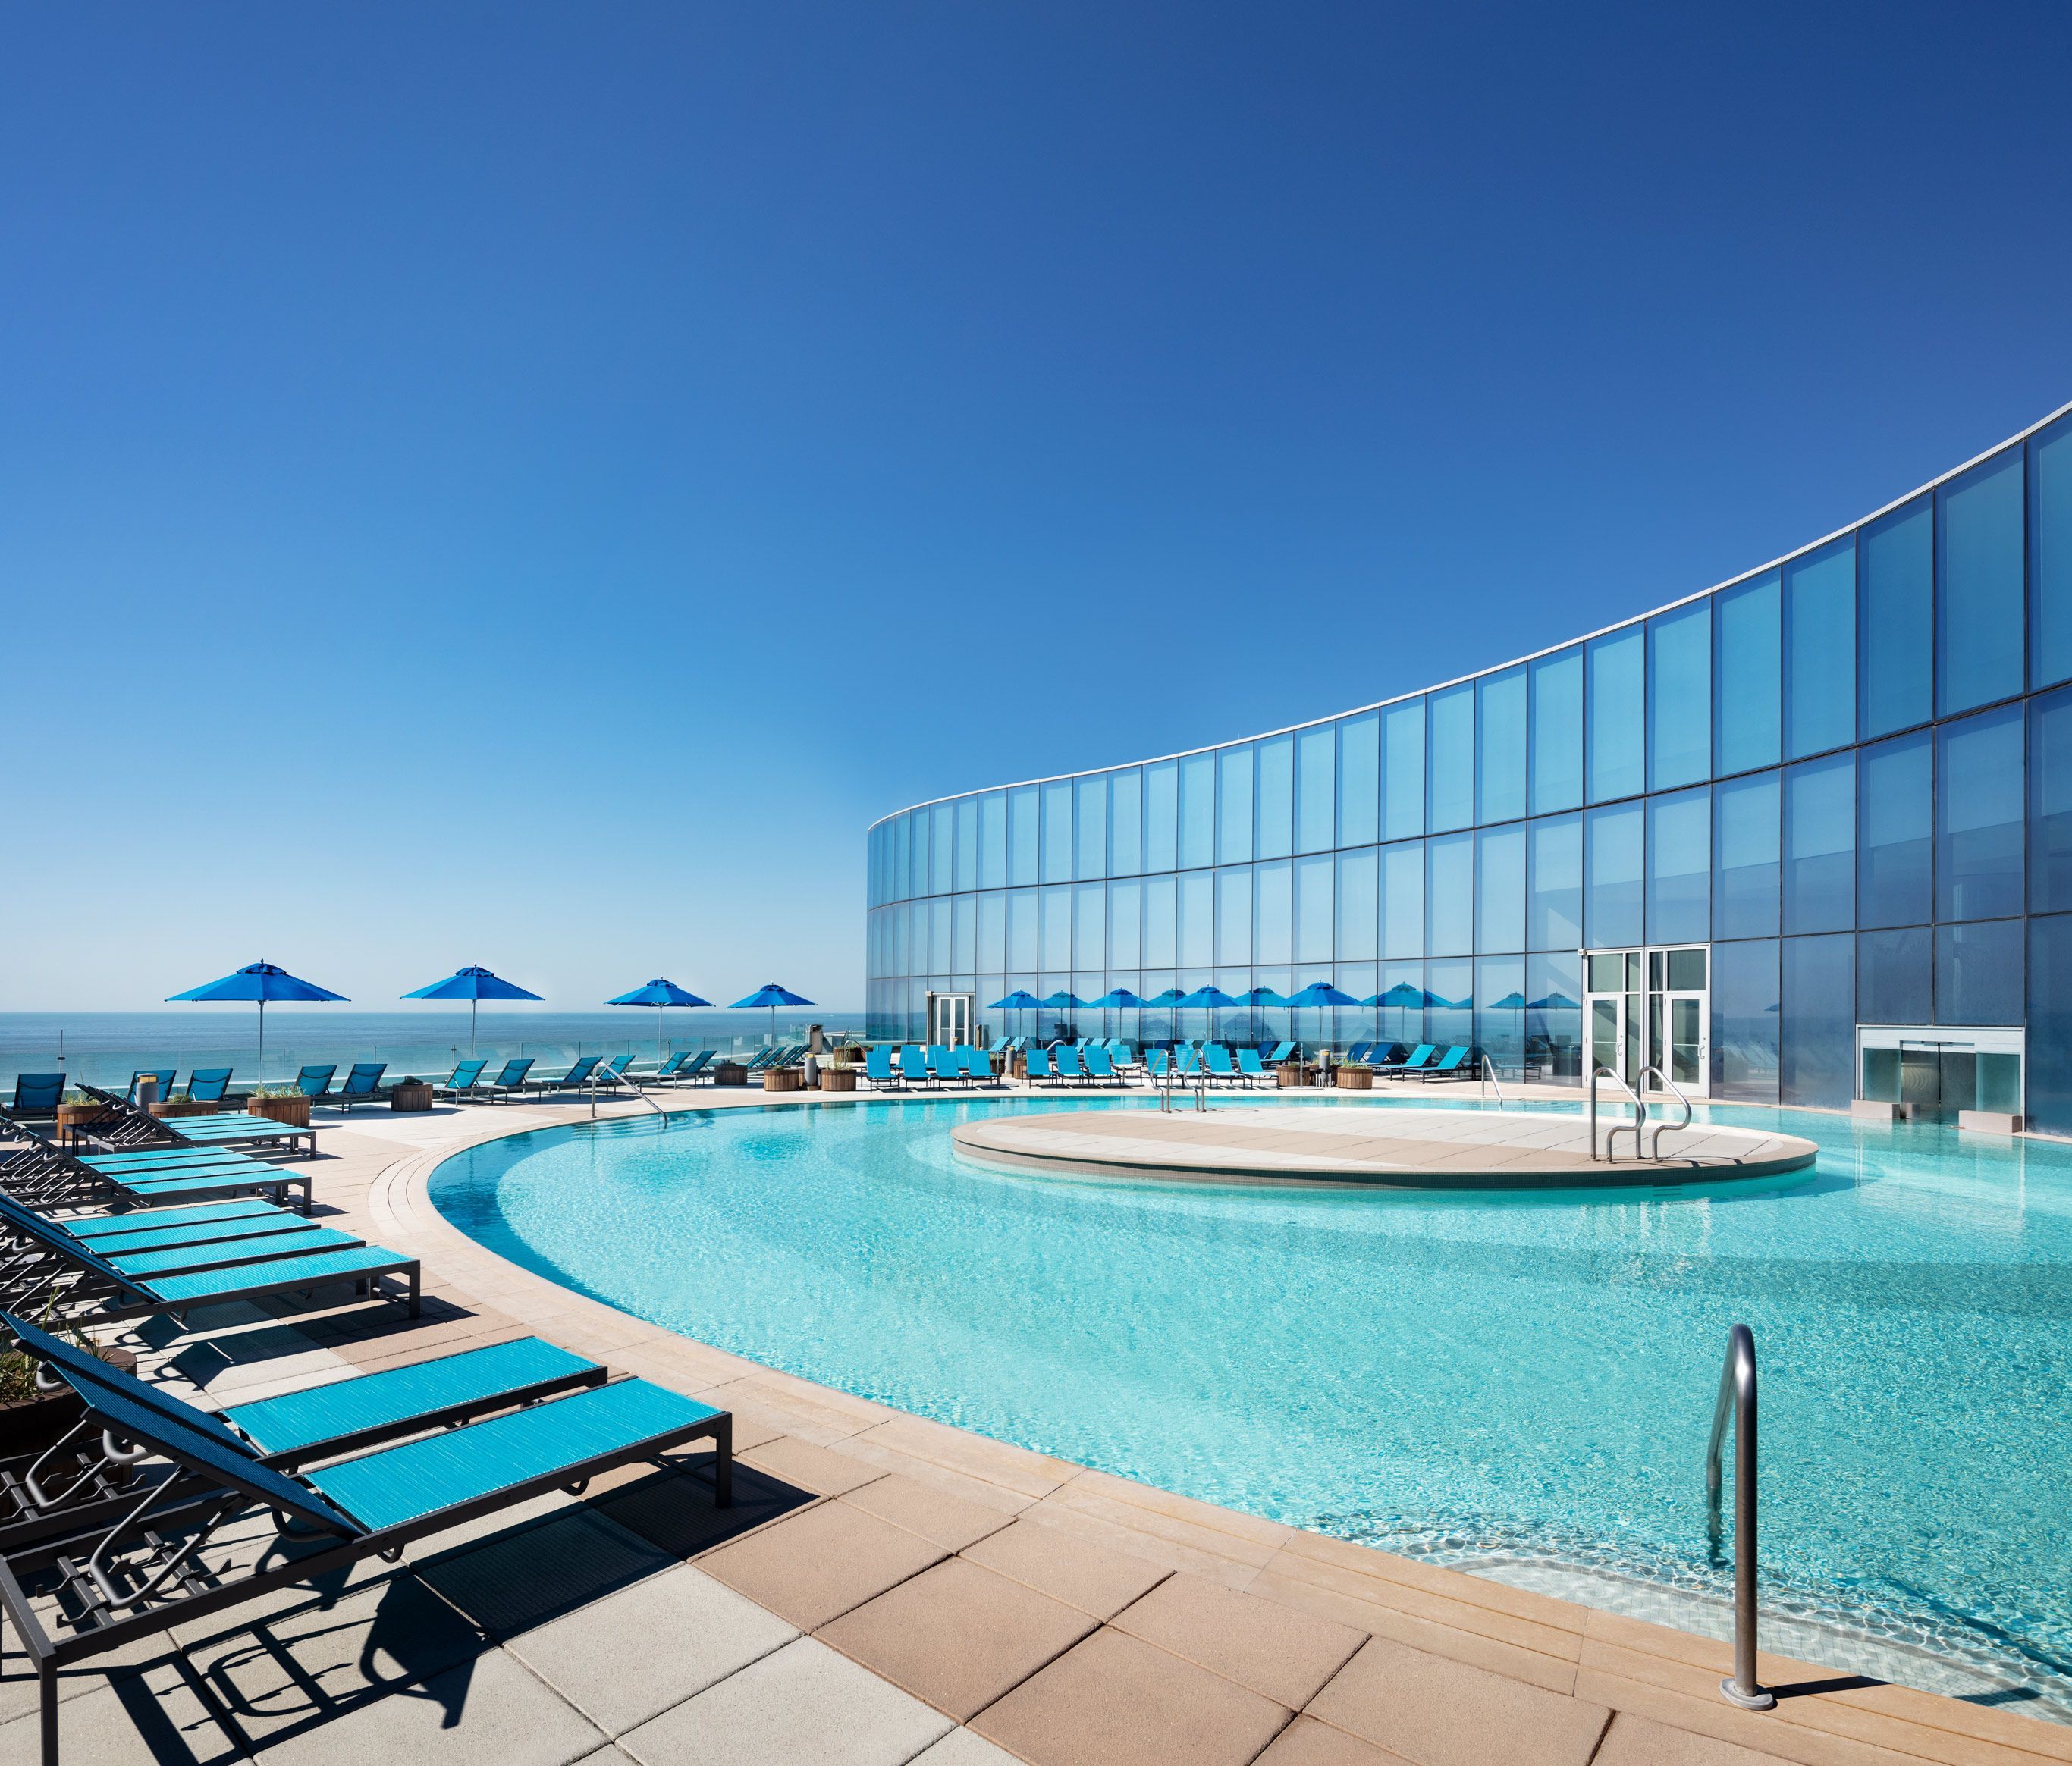 Eclipse Pool at Ocean Casino Resort 